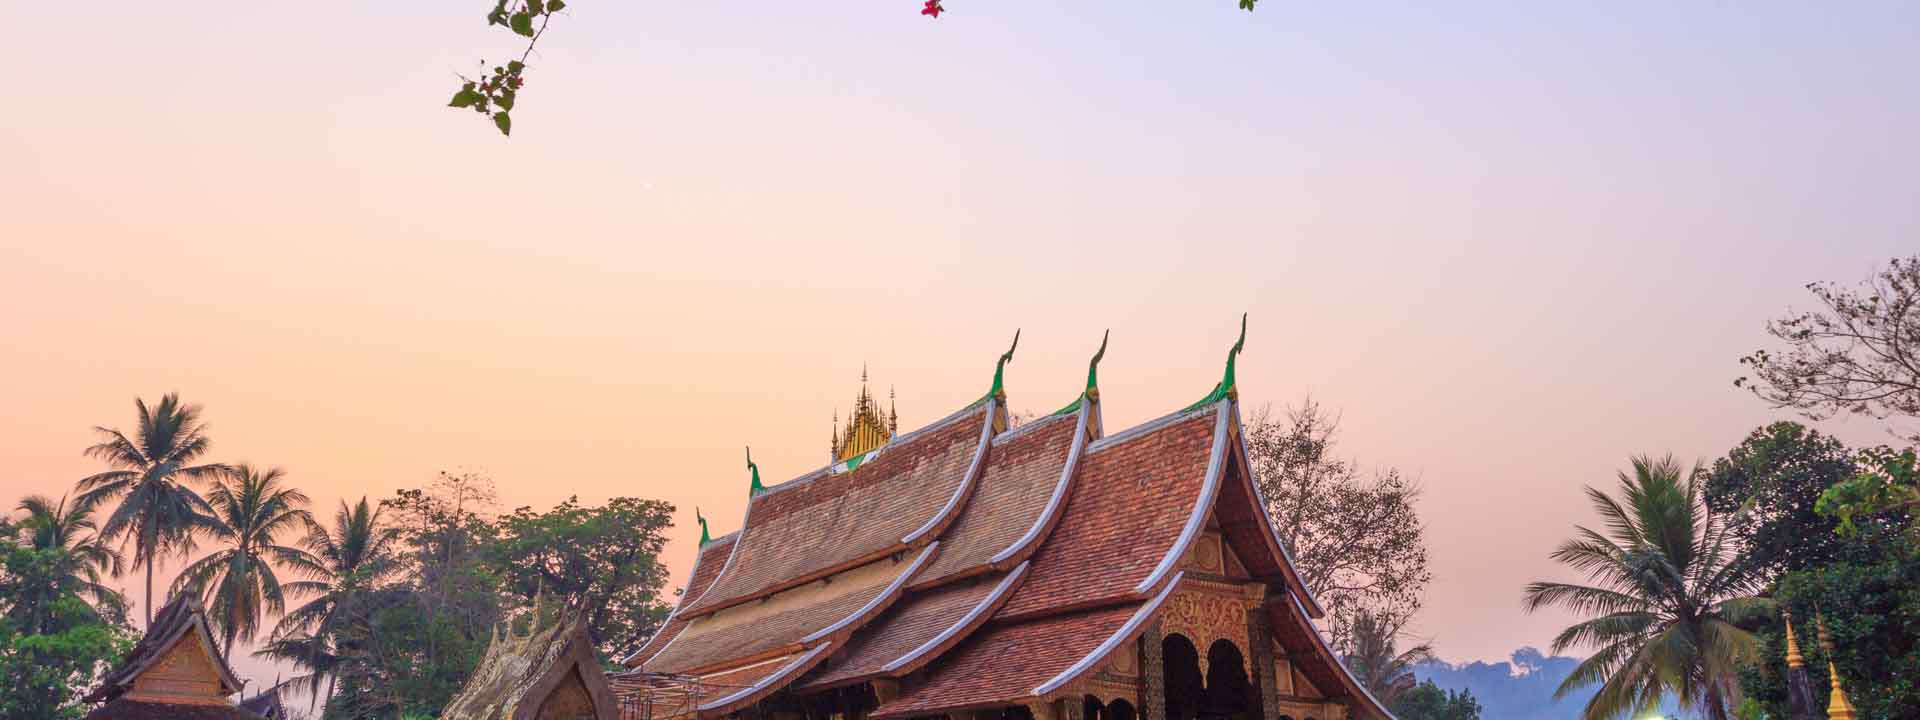 Luxury Grand Cambodia Laos Vietnam Tour 15 days